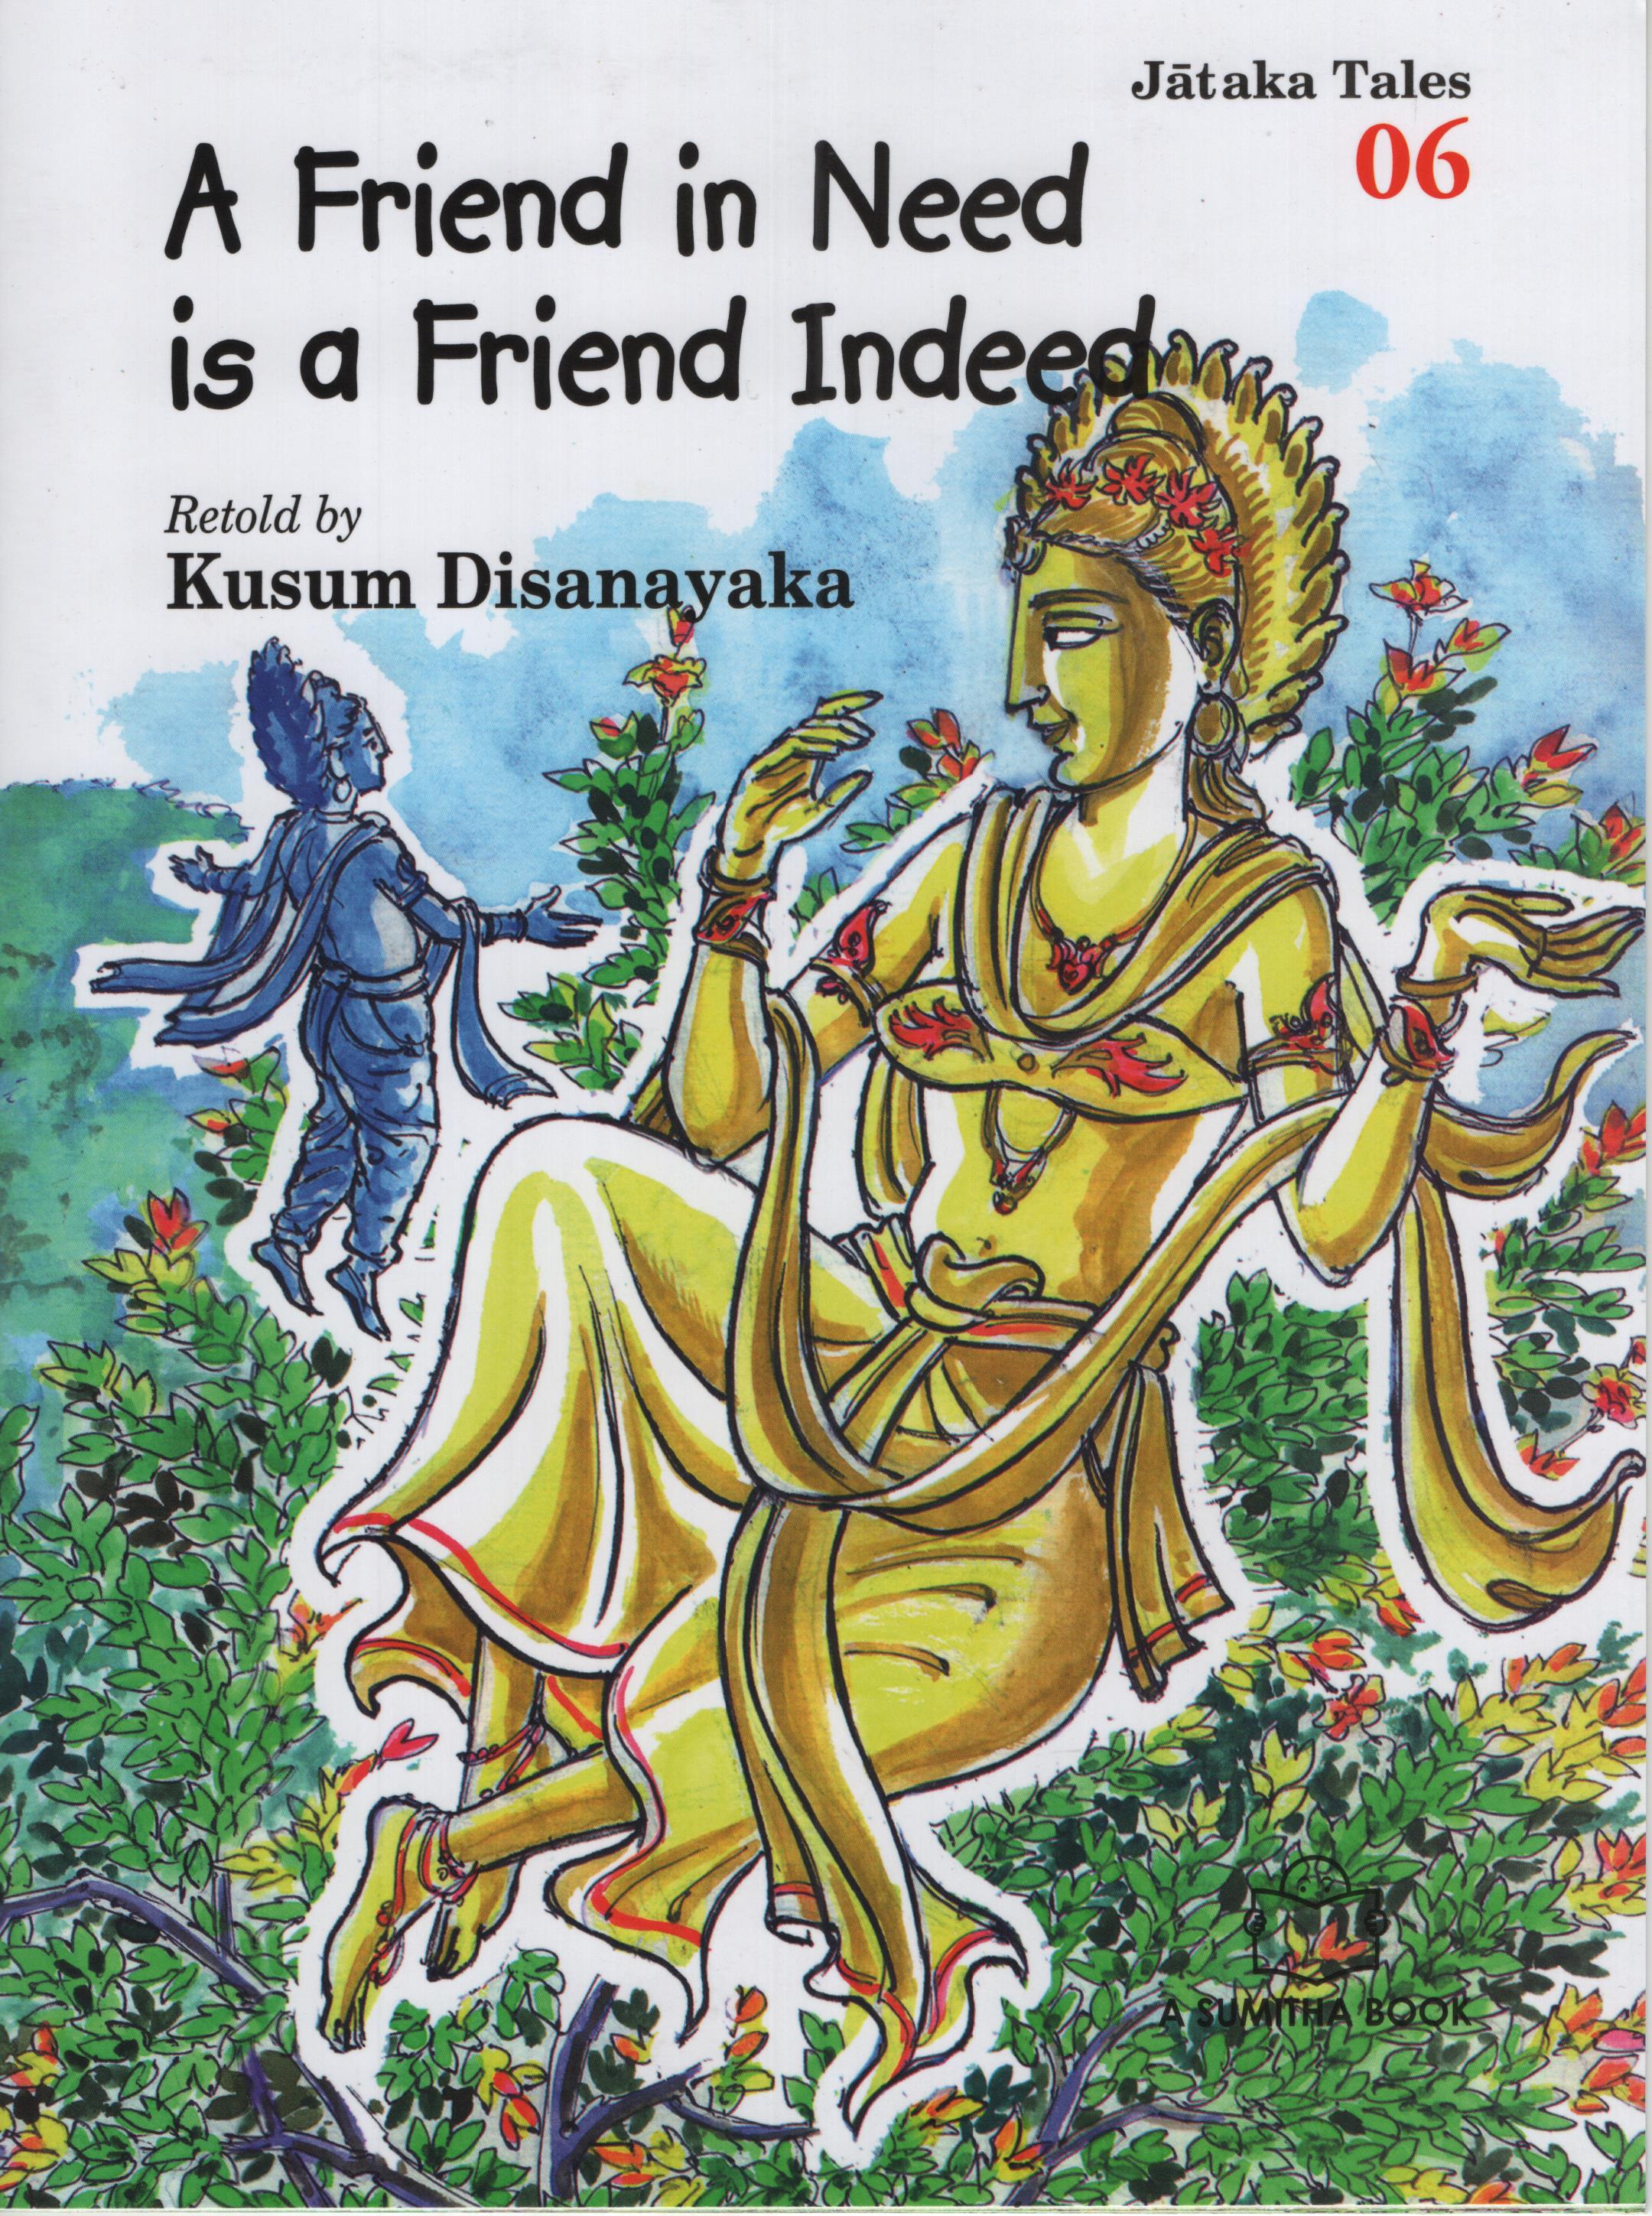 Jataka Tales 06 - A Friend in Need is a Friend Indeed